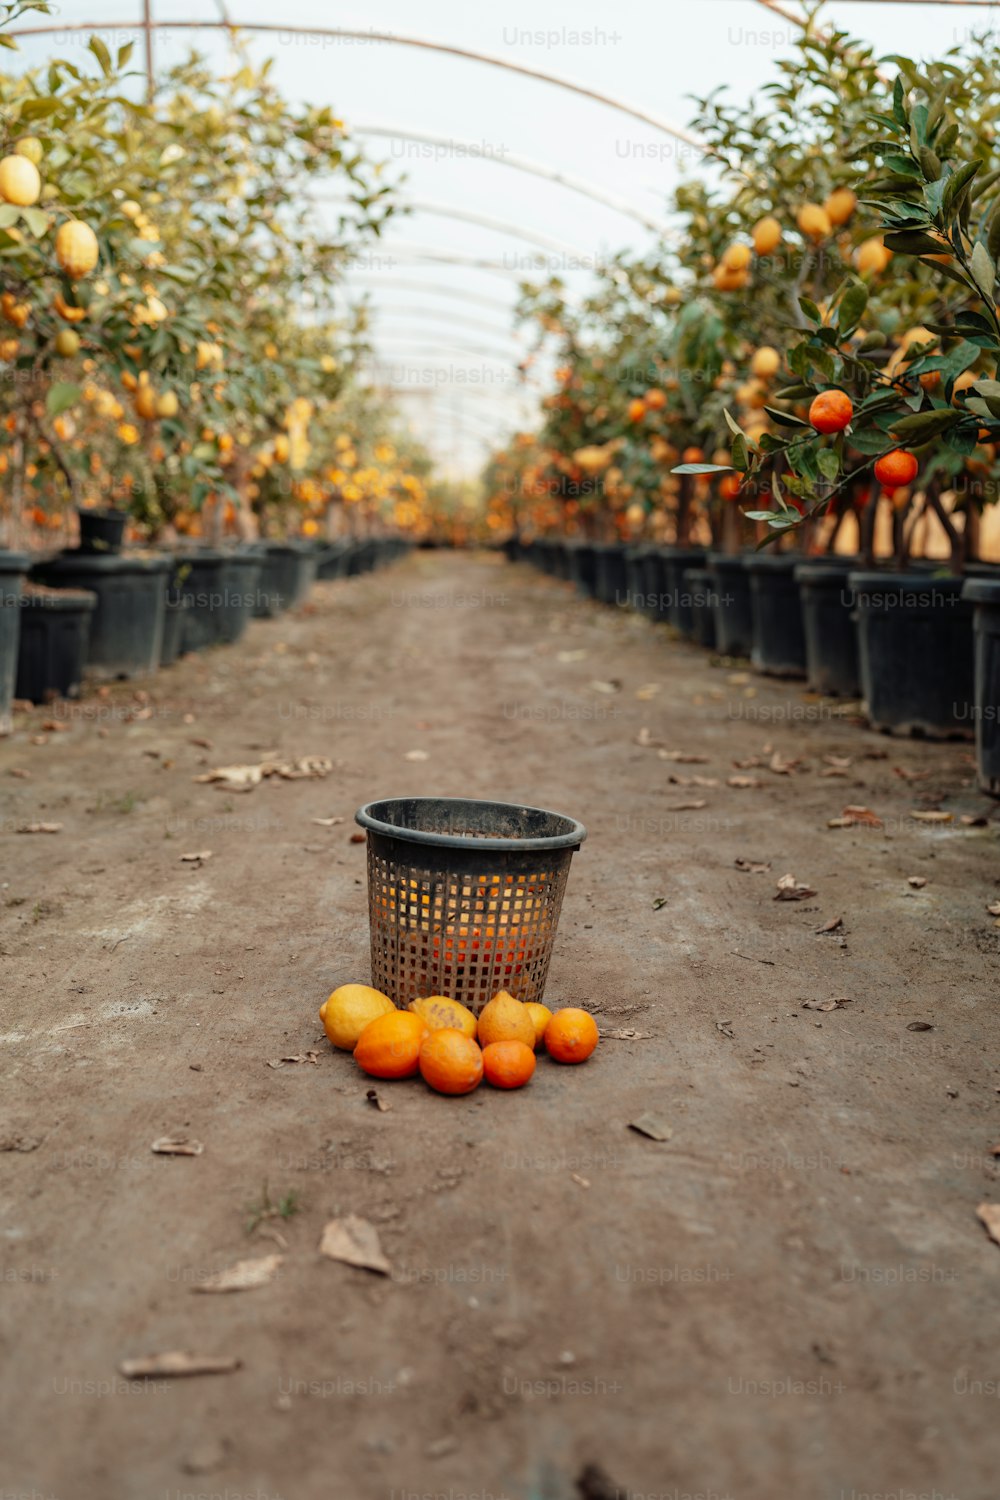 Una canasta de naranjas sentada en un camino de tierra